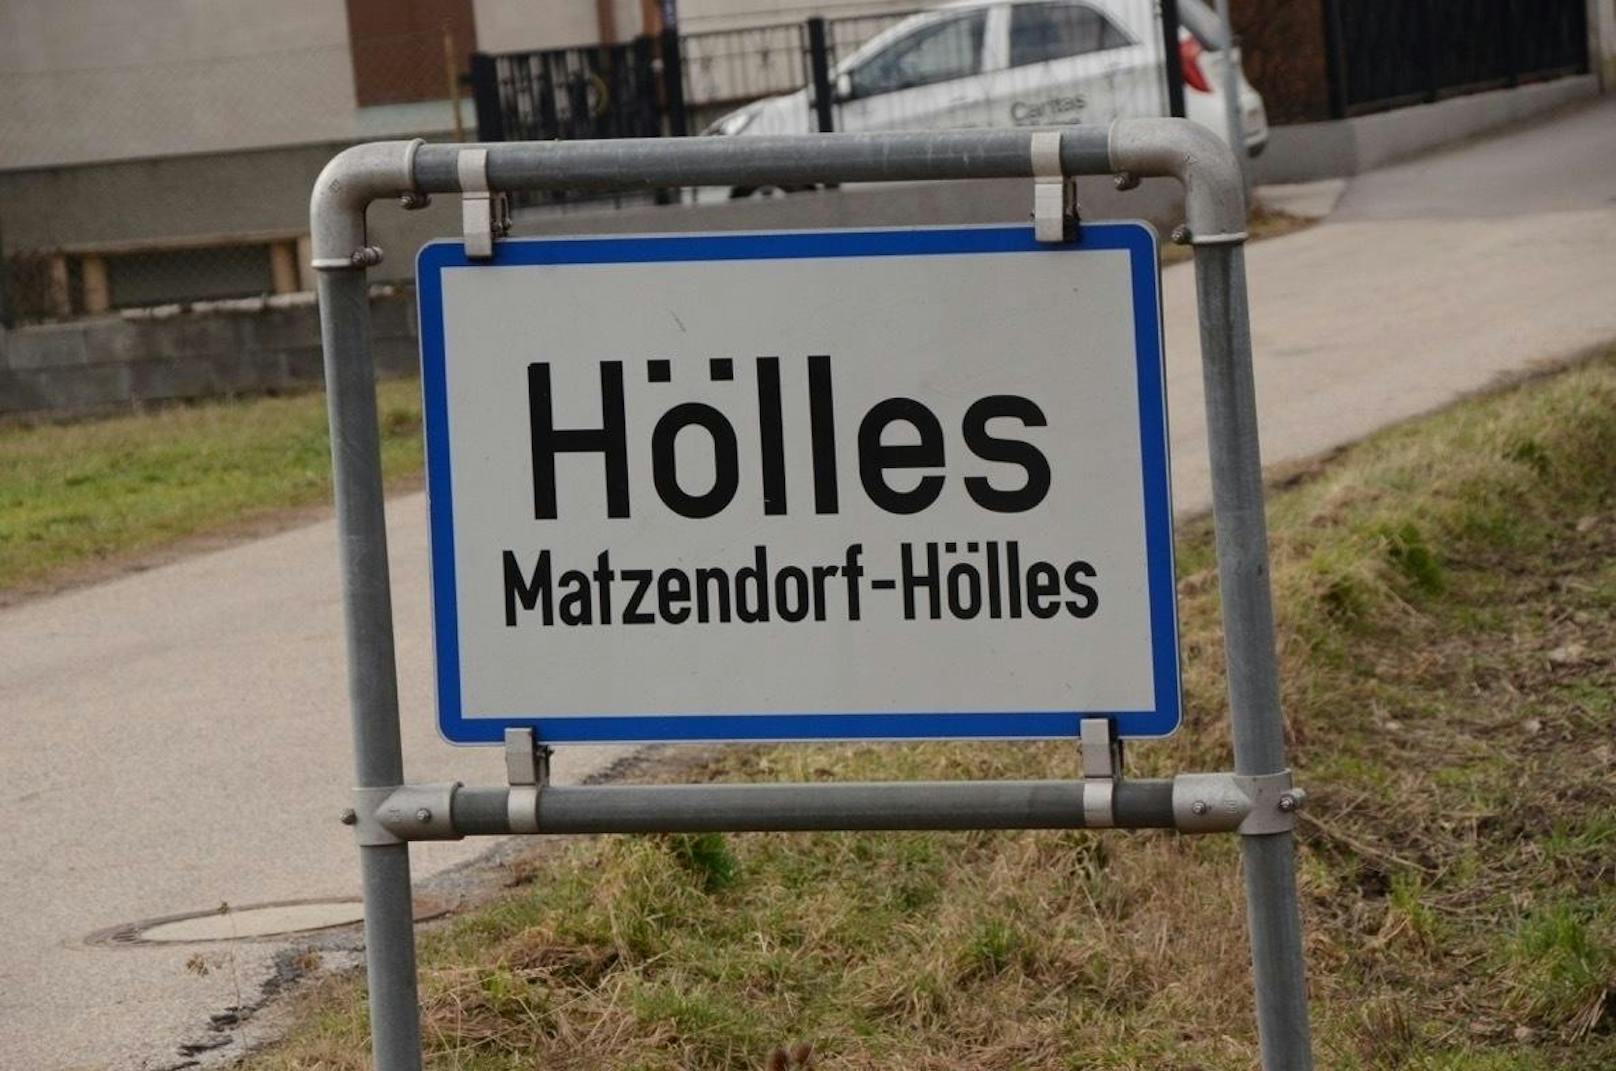 Matzendorf-Hölles